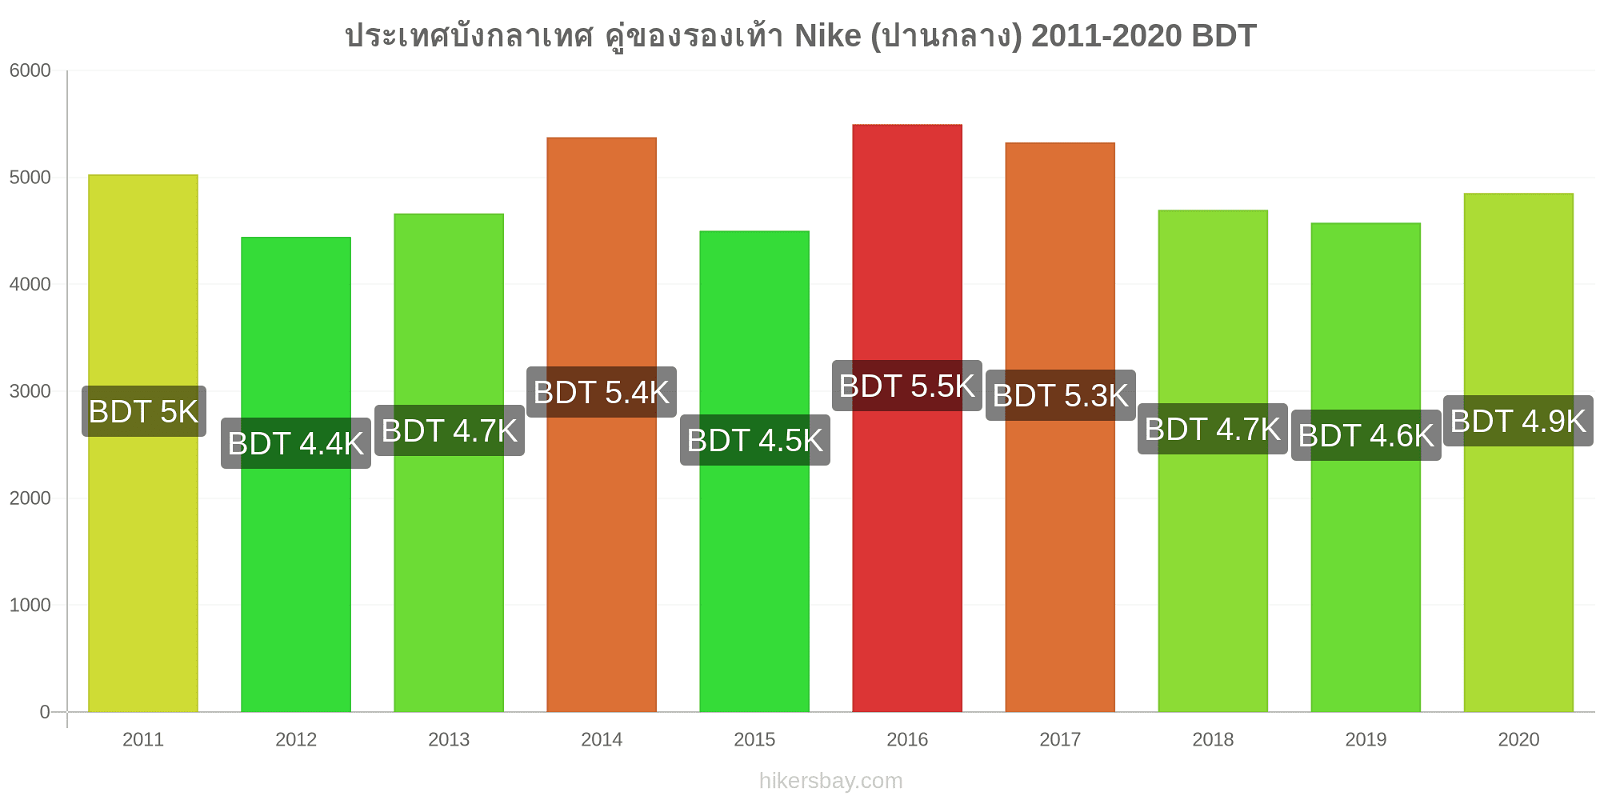 ประเทศบังกลาเทศ การเปลี่ยนแปลงราคา คู่ของรองเท้า Nike (ปานกลาง) hikersbay.com